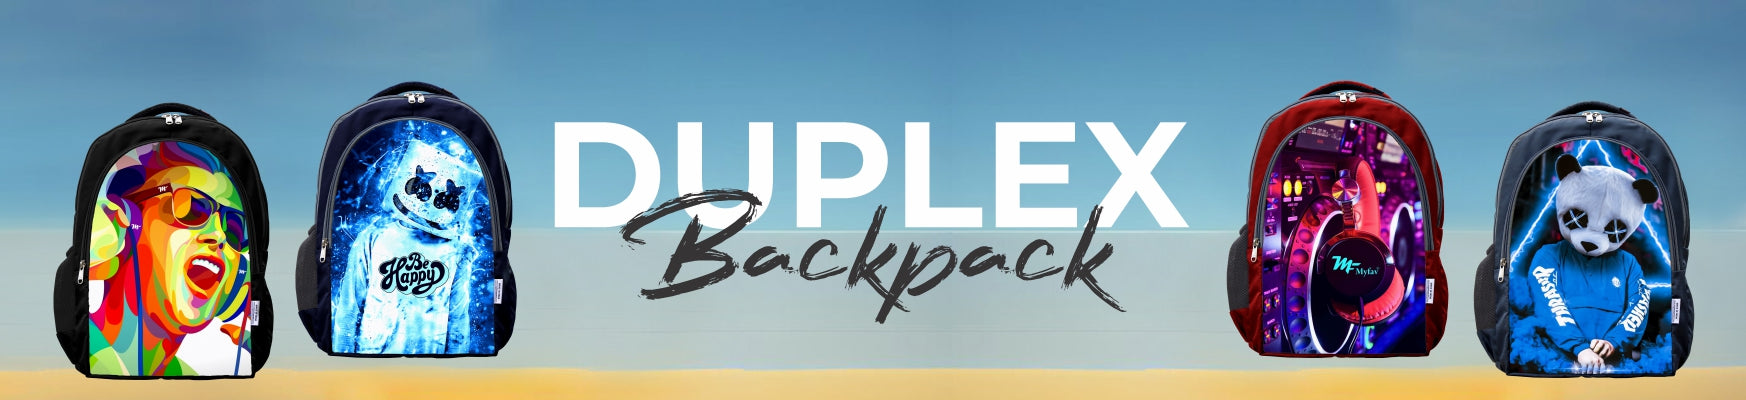 Duplex Backpacks